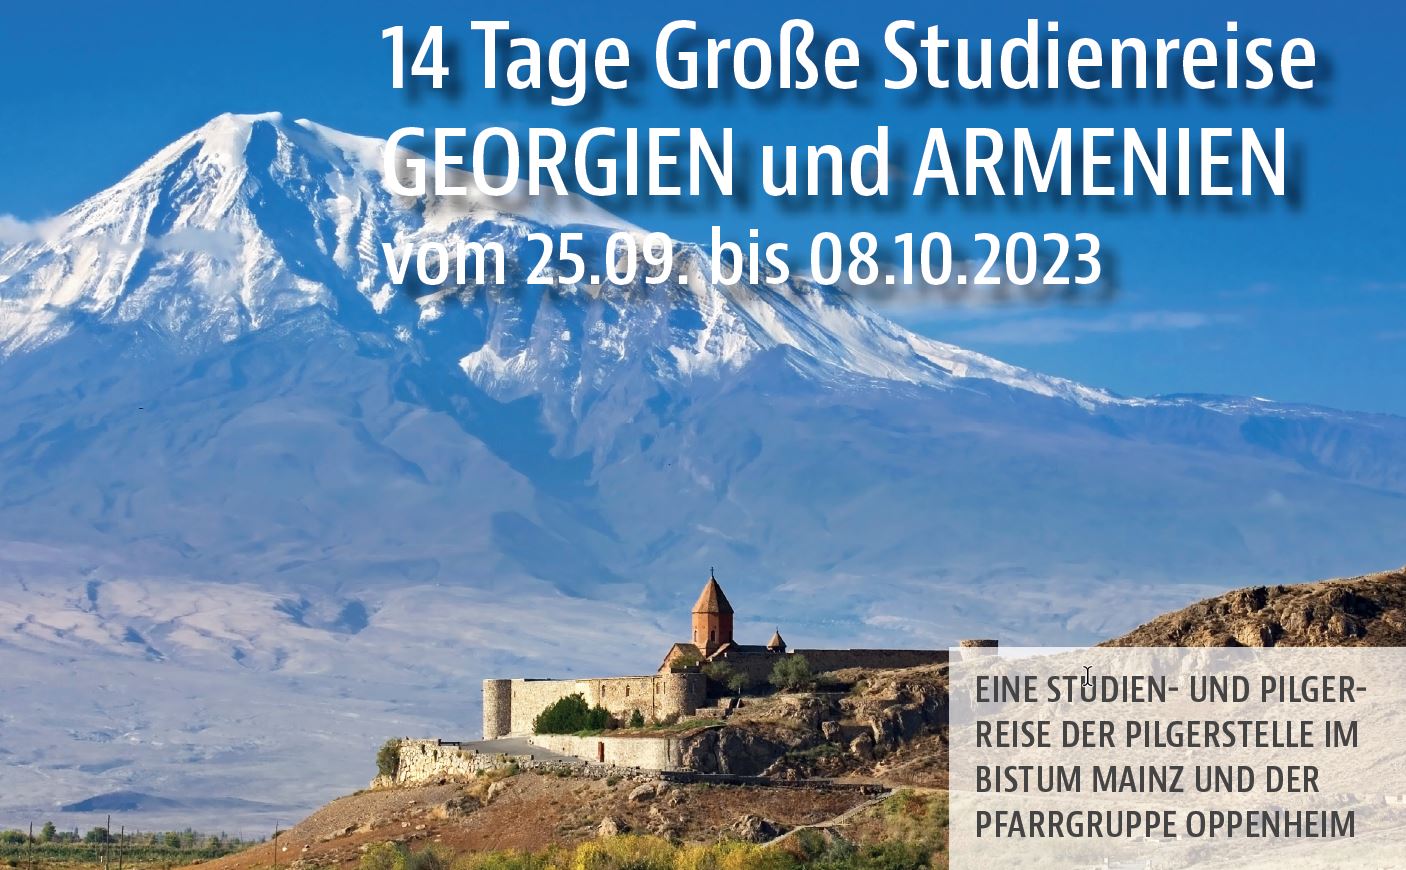 2023_Studienreise_PG_Oppenheim_Armenien_Georgien (c) Pfarrgruppe Oppenheim